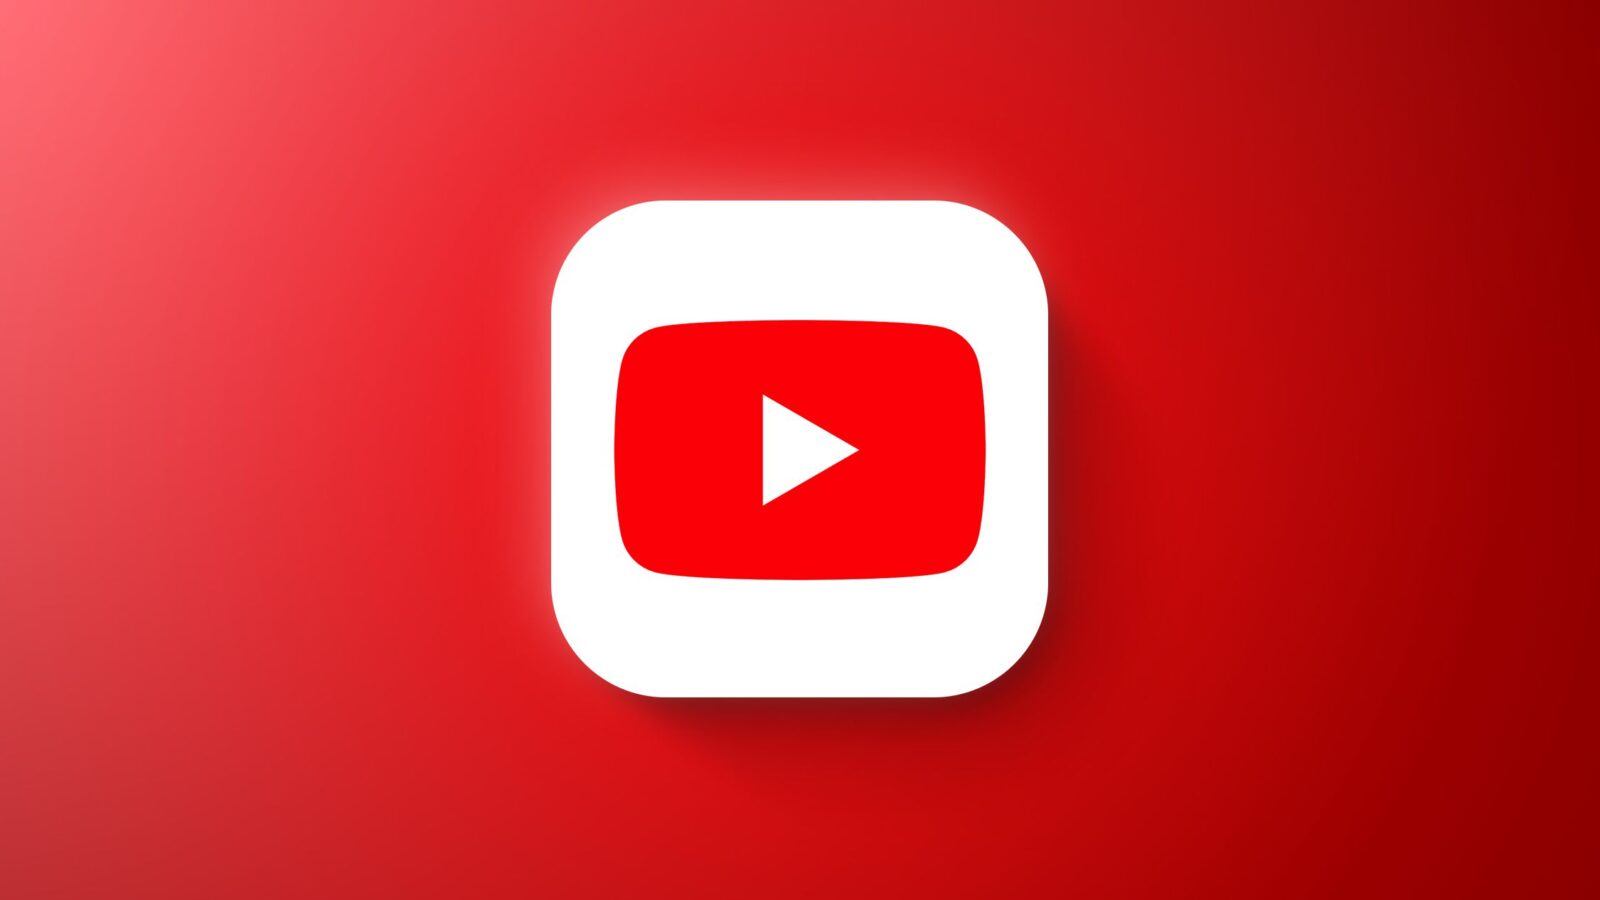 Videos en 4K solo estarán disponibles en YouTube Premium